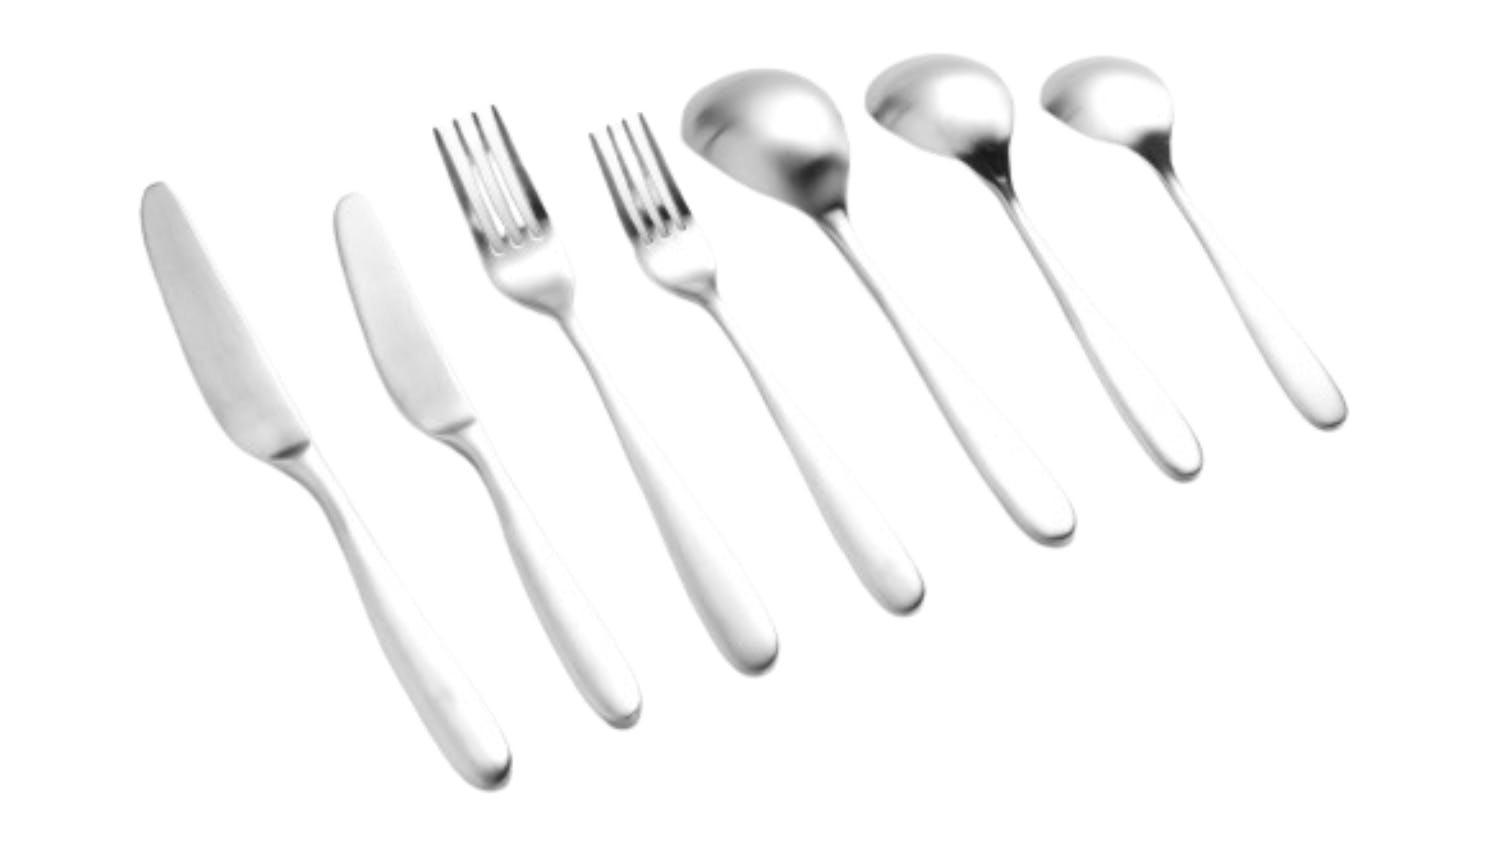 Nouveau Cutlery Set 56pcs. - Matte Silver